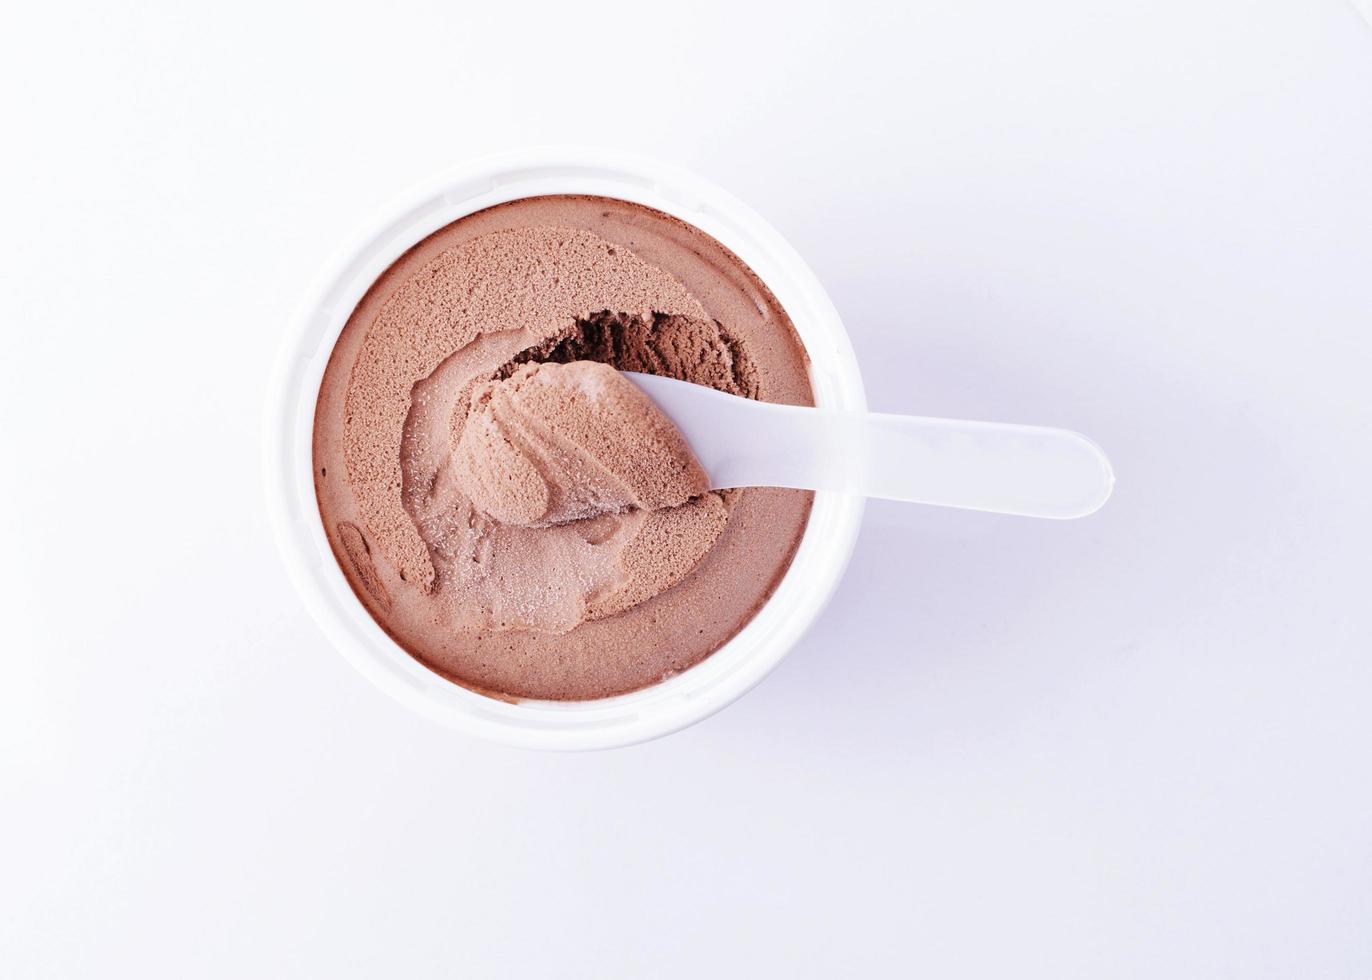 sorvete com sabor de chocolate para comer como fundo de alimentos foto